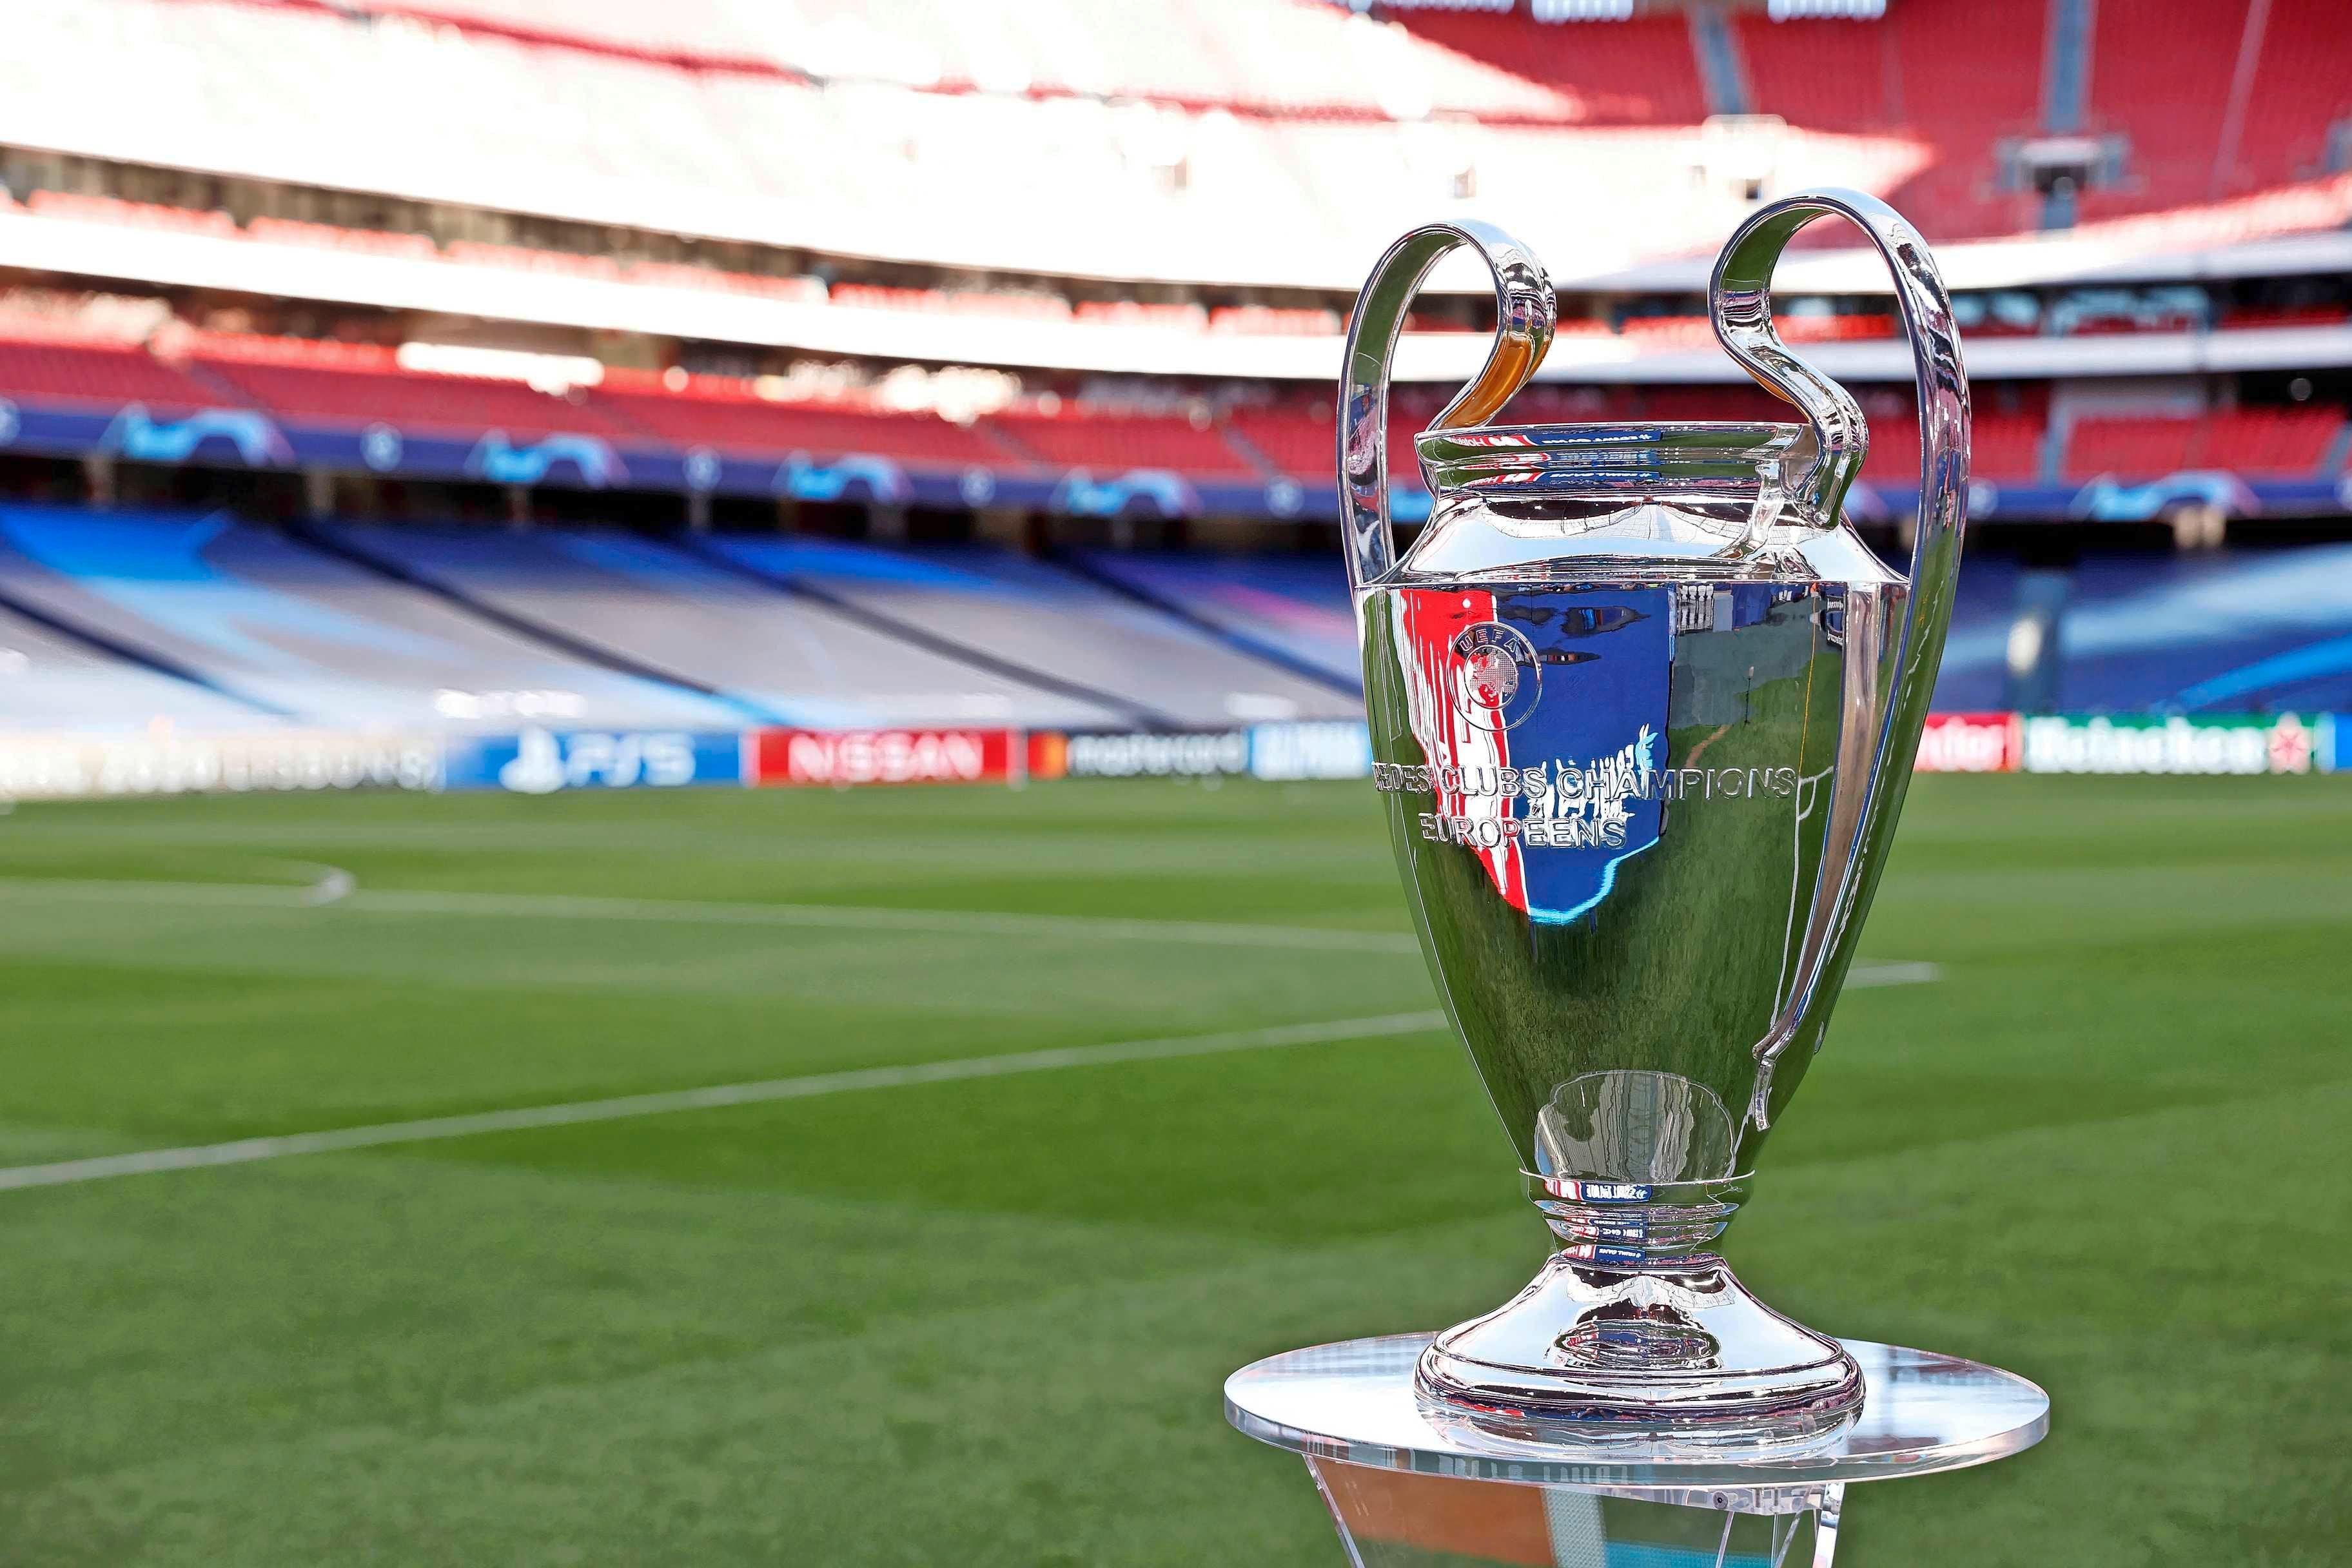 Aanstellen Versnellen Pittig Engelse finale Champions League mogelijk toch in Portugal | Voetbal |  Telegraaf.nl